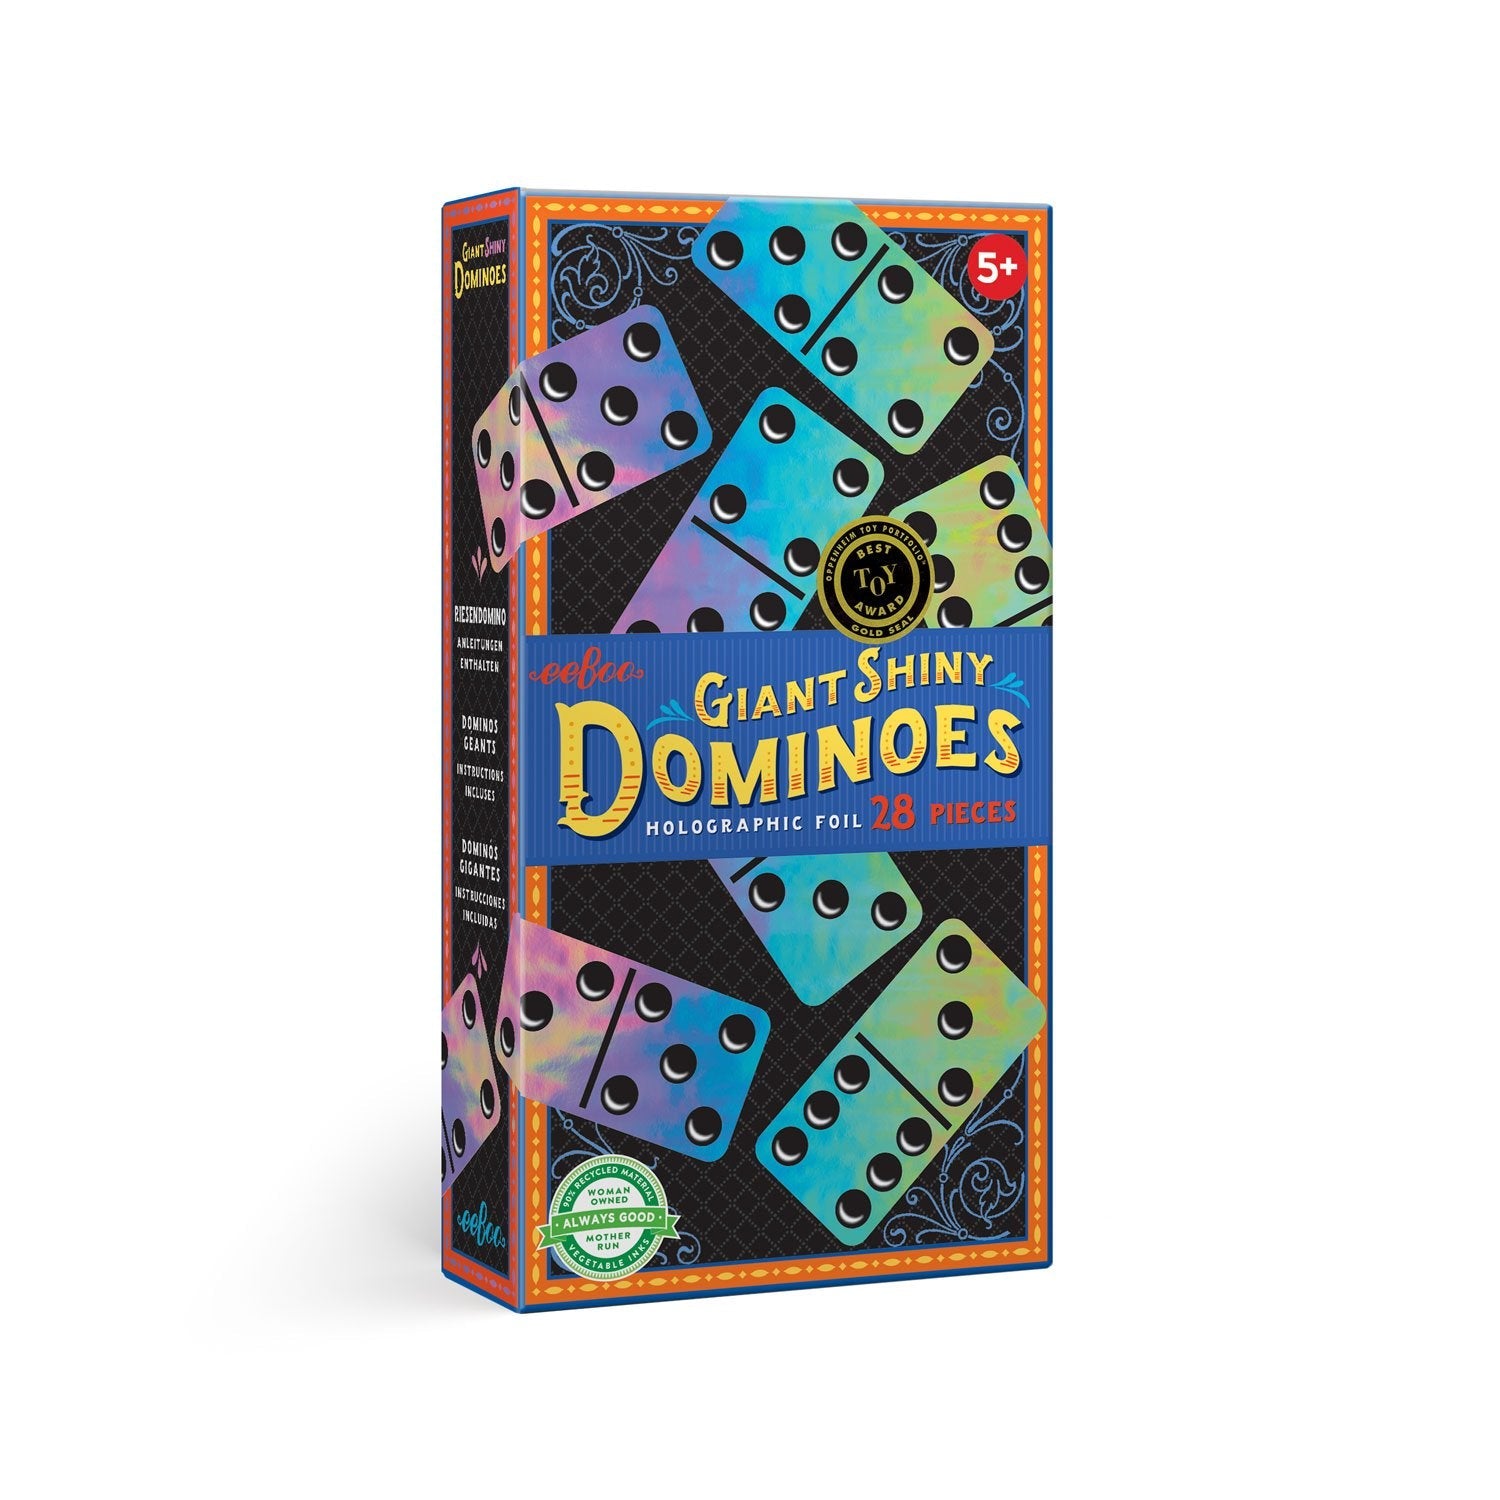 Shiny Giant Dominos